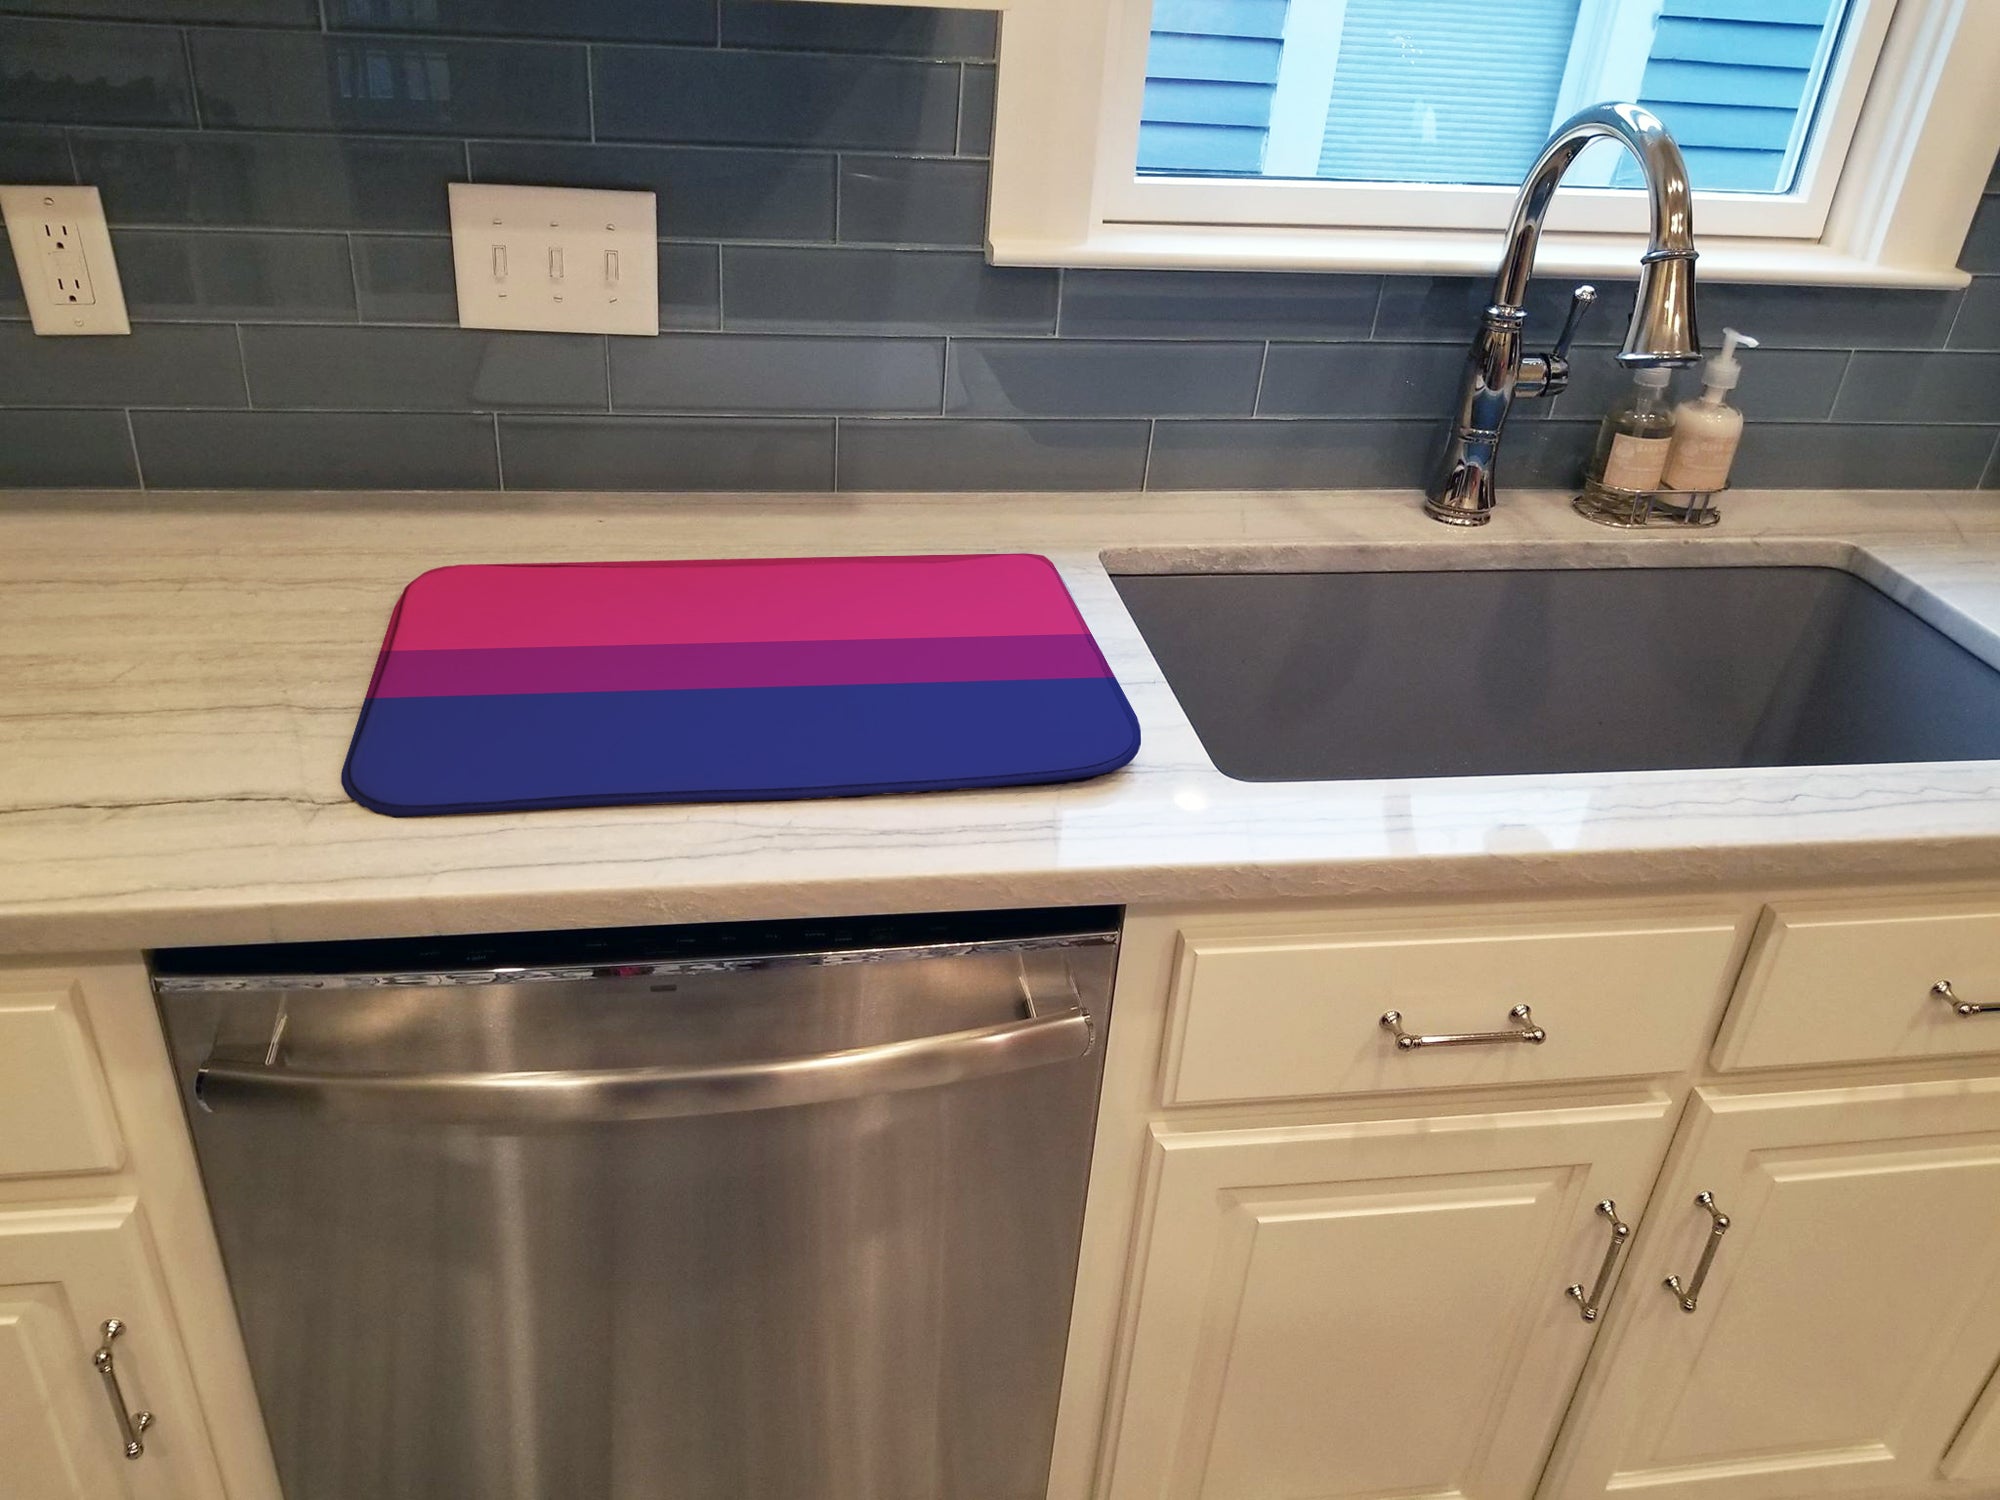 Bisexual Pride Dish Drying Mat